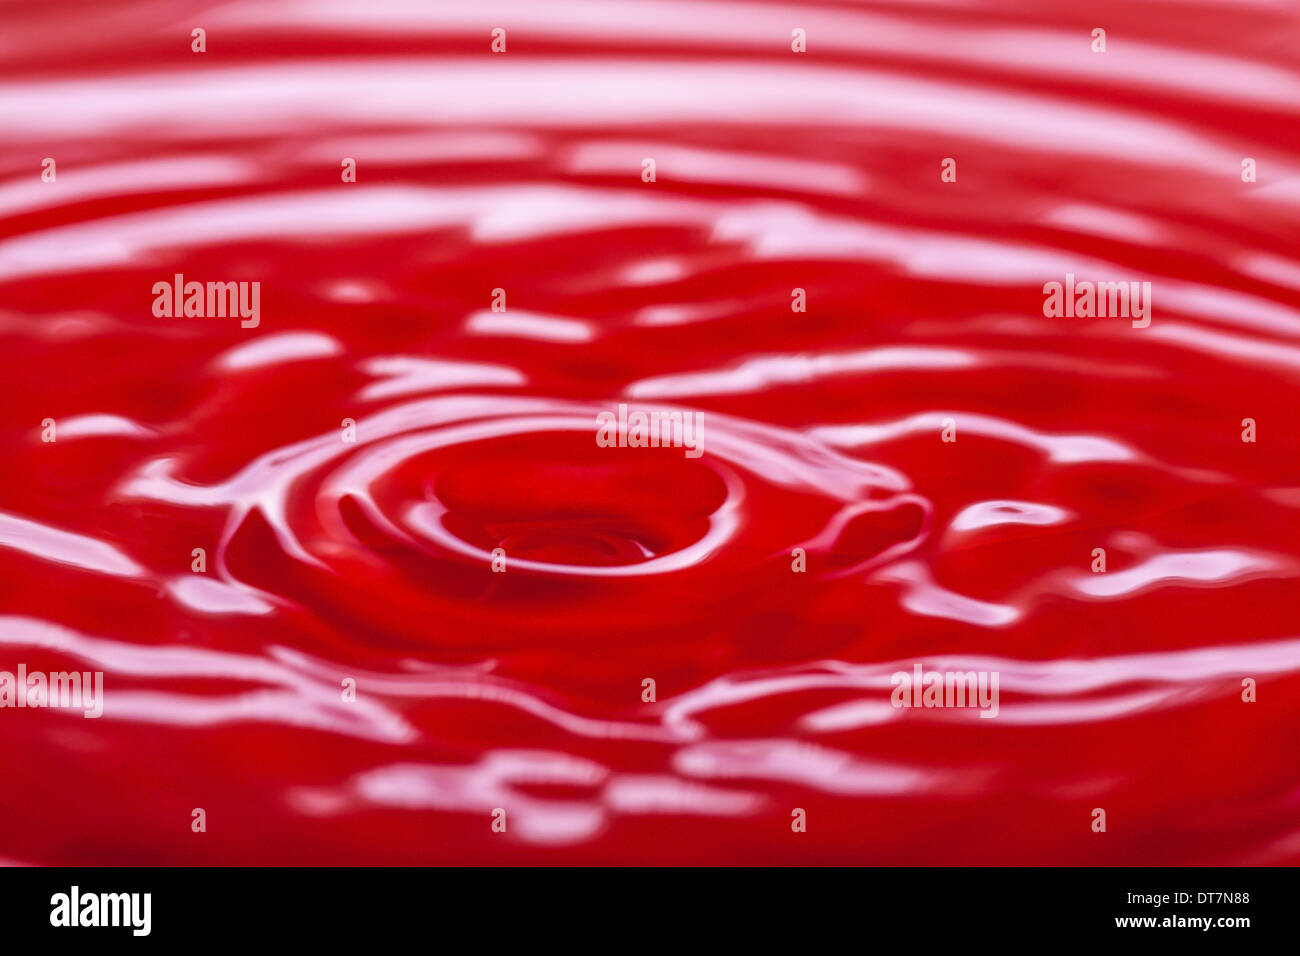 Photo de l'excitation de liquide rouge Banque D'Images